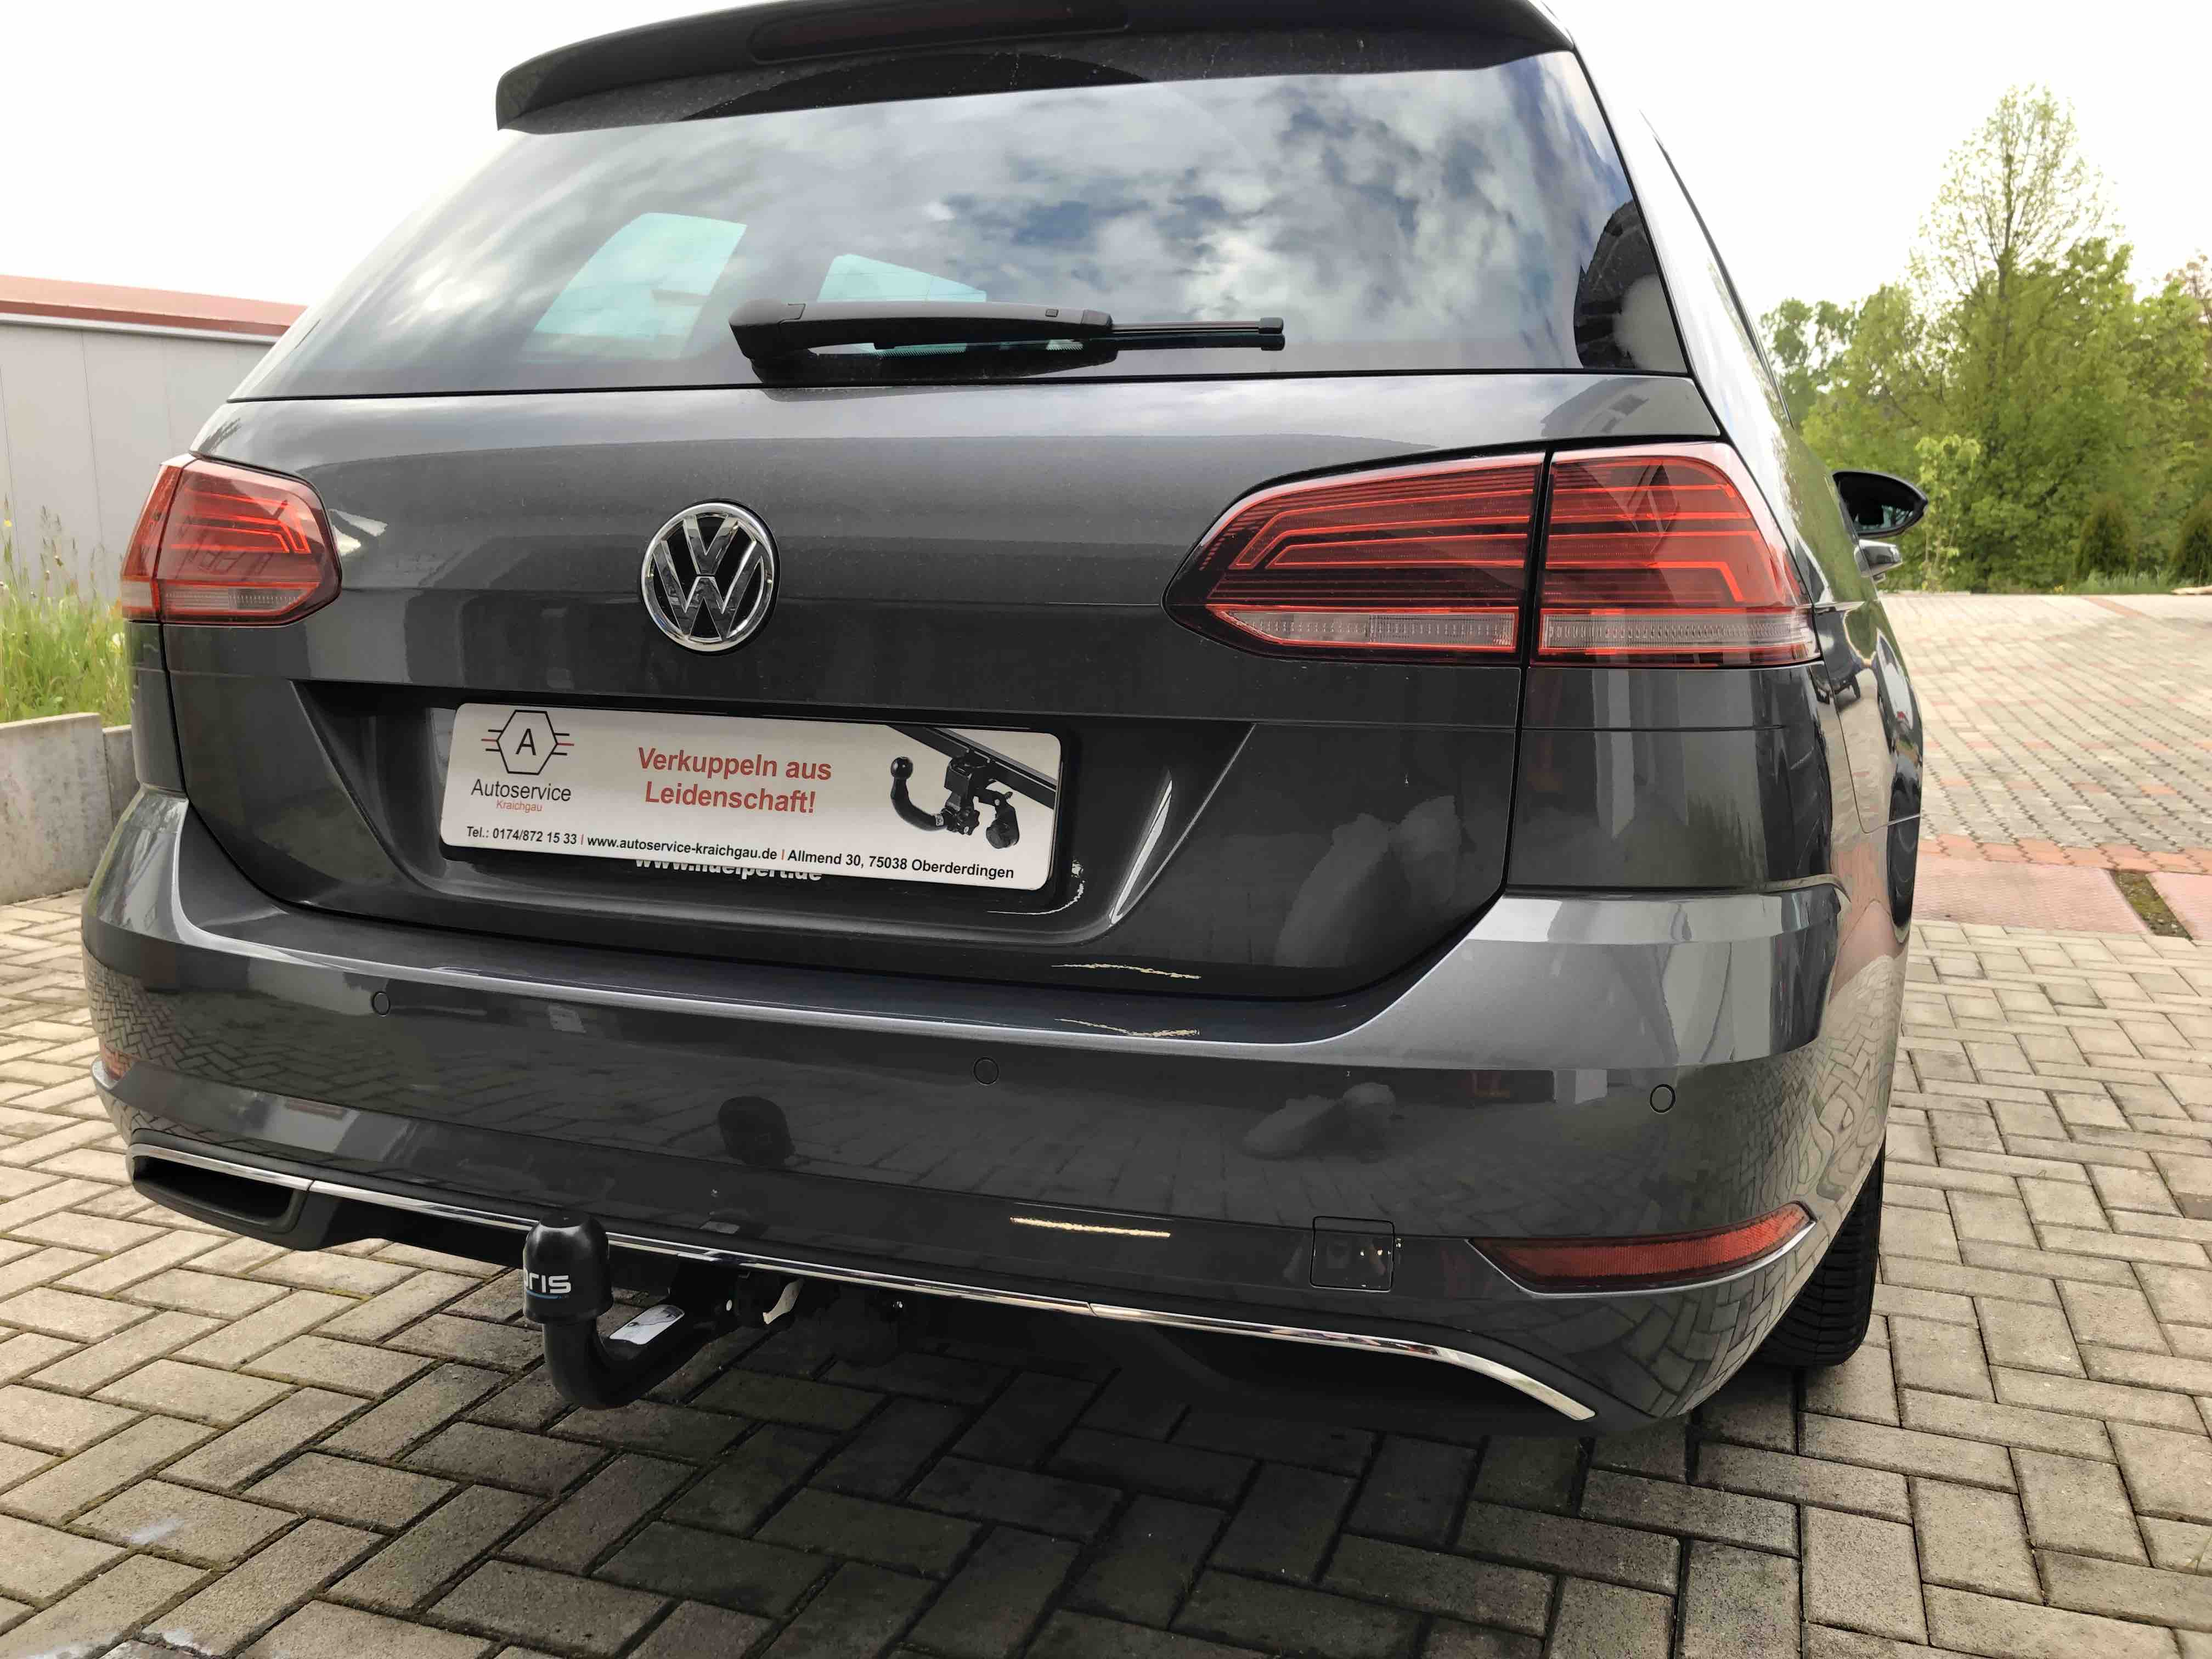 VW Golf Variant Anhängerkupplung nachrüsten